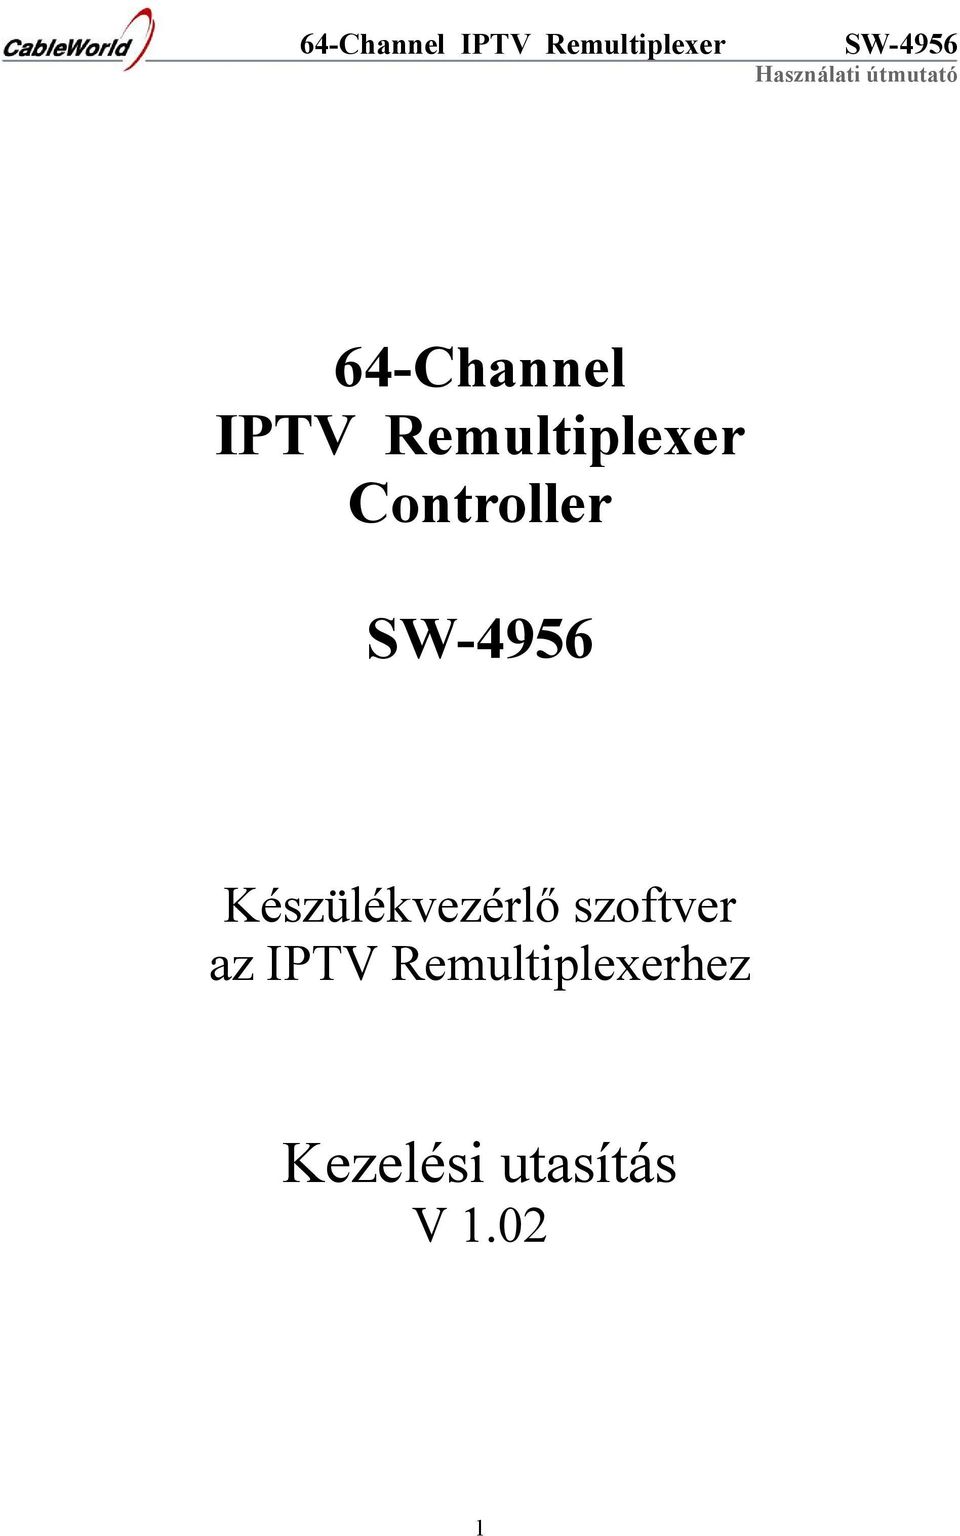 szoftver az IPTV